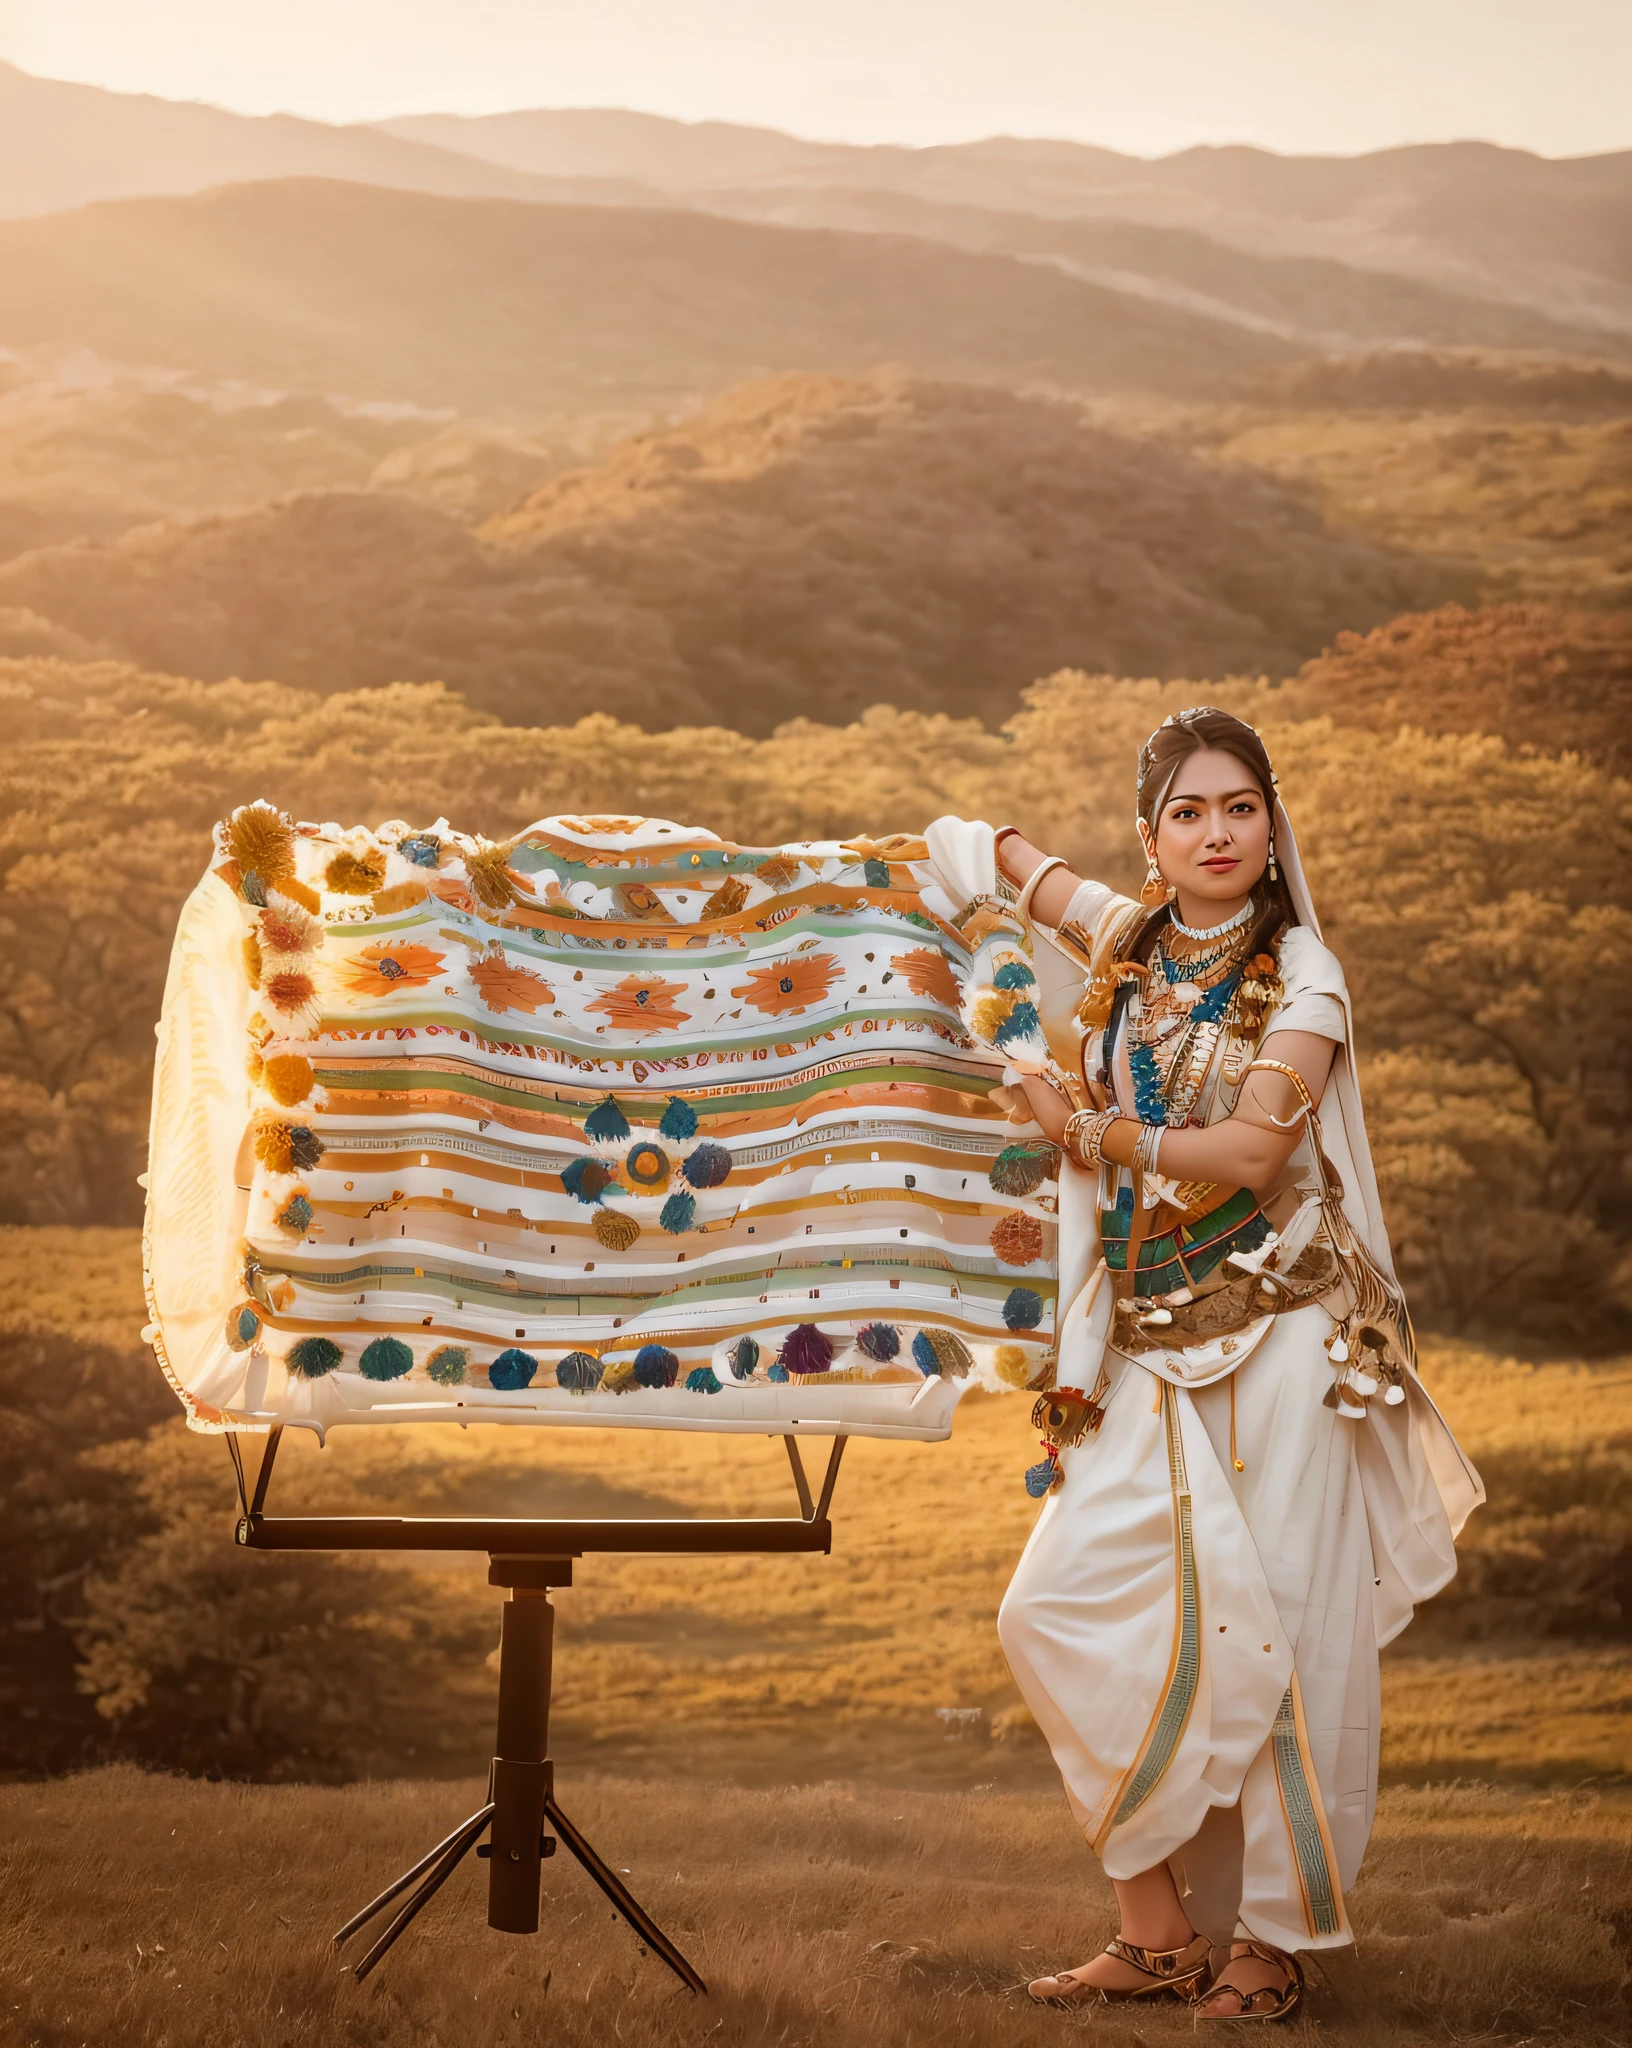 Ultra 8K, Araffe-Frau steht mit einer Decke auf einem Stativ auf einem Feld, trägt ein elegantes Stammes-Outfit, Traditionelle Fotografie, traditionelles Kostüm, traditionelles Kleid, Sie trug Schamanenkleidung, traditionelle Schönheit, Indienn style, aufgenommen mit Canon EOS R 6, shot on nikon z9, eine junge Schamanin, traditionelle Kleidung, traditionelle Kleidung tragen, Indien